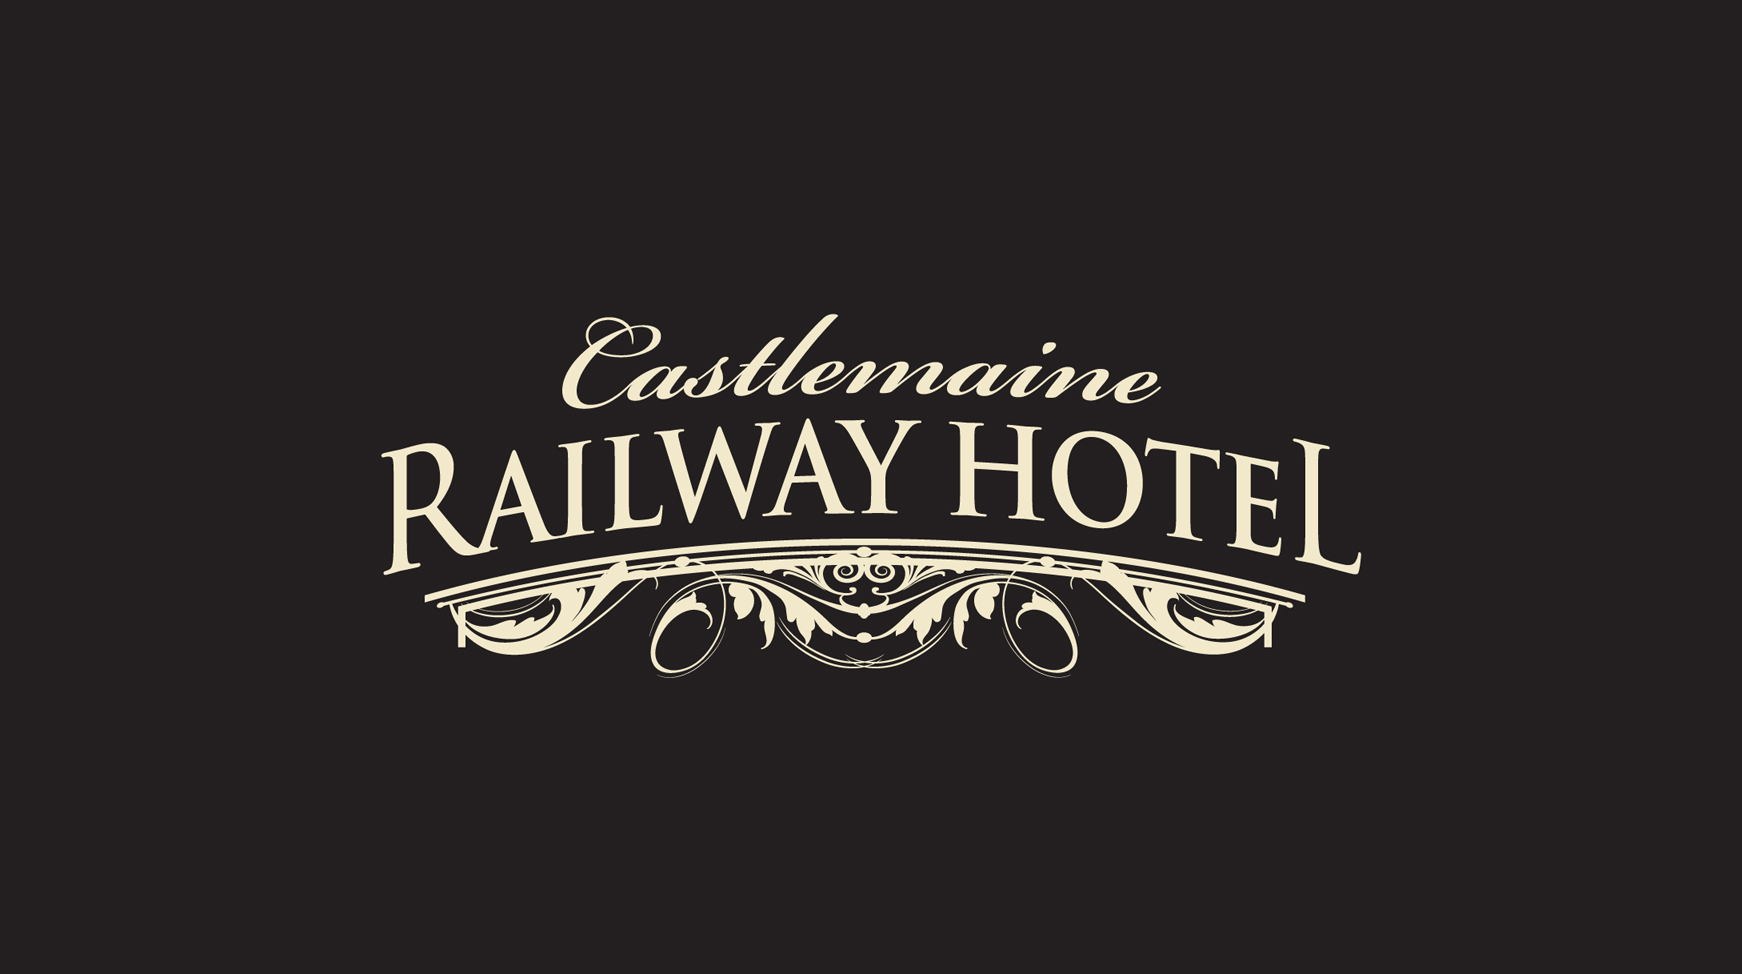 Railway Hotel Castlemaine - Accommodation Mooloolaba